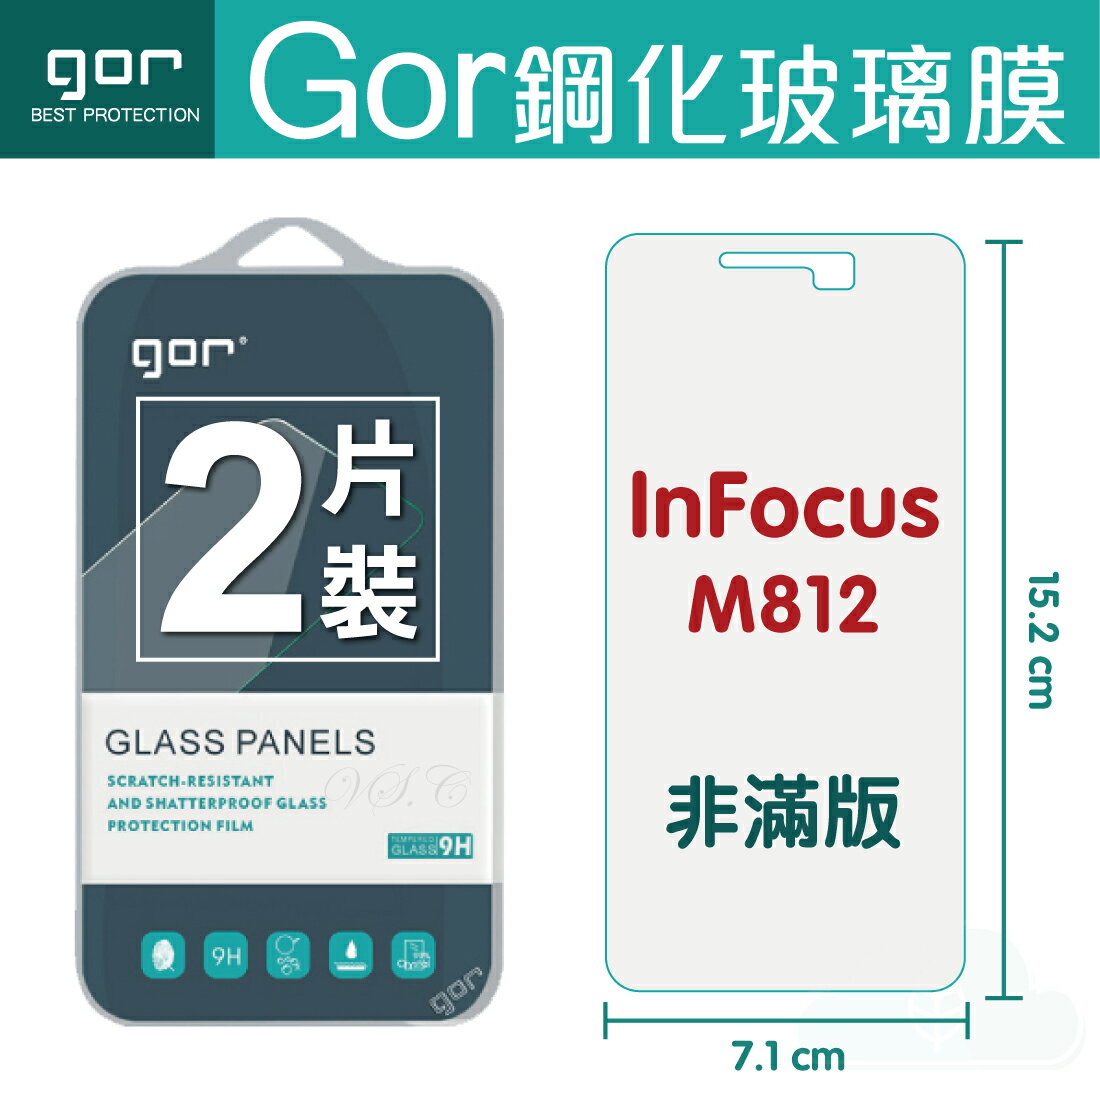 【鴻海/Infocus】GOR 正品 9H M812 玻璃 鋼化 保護貼【全館滿299免運費】